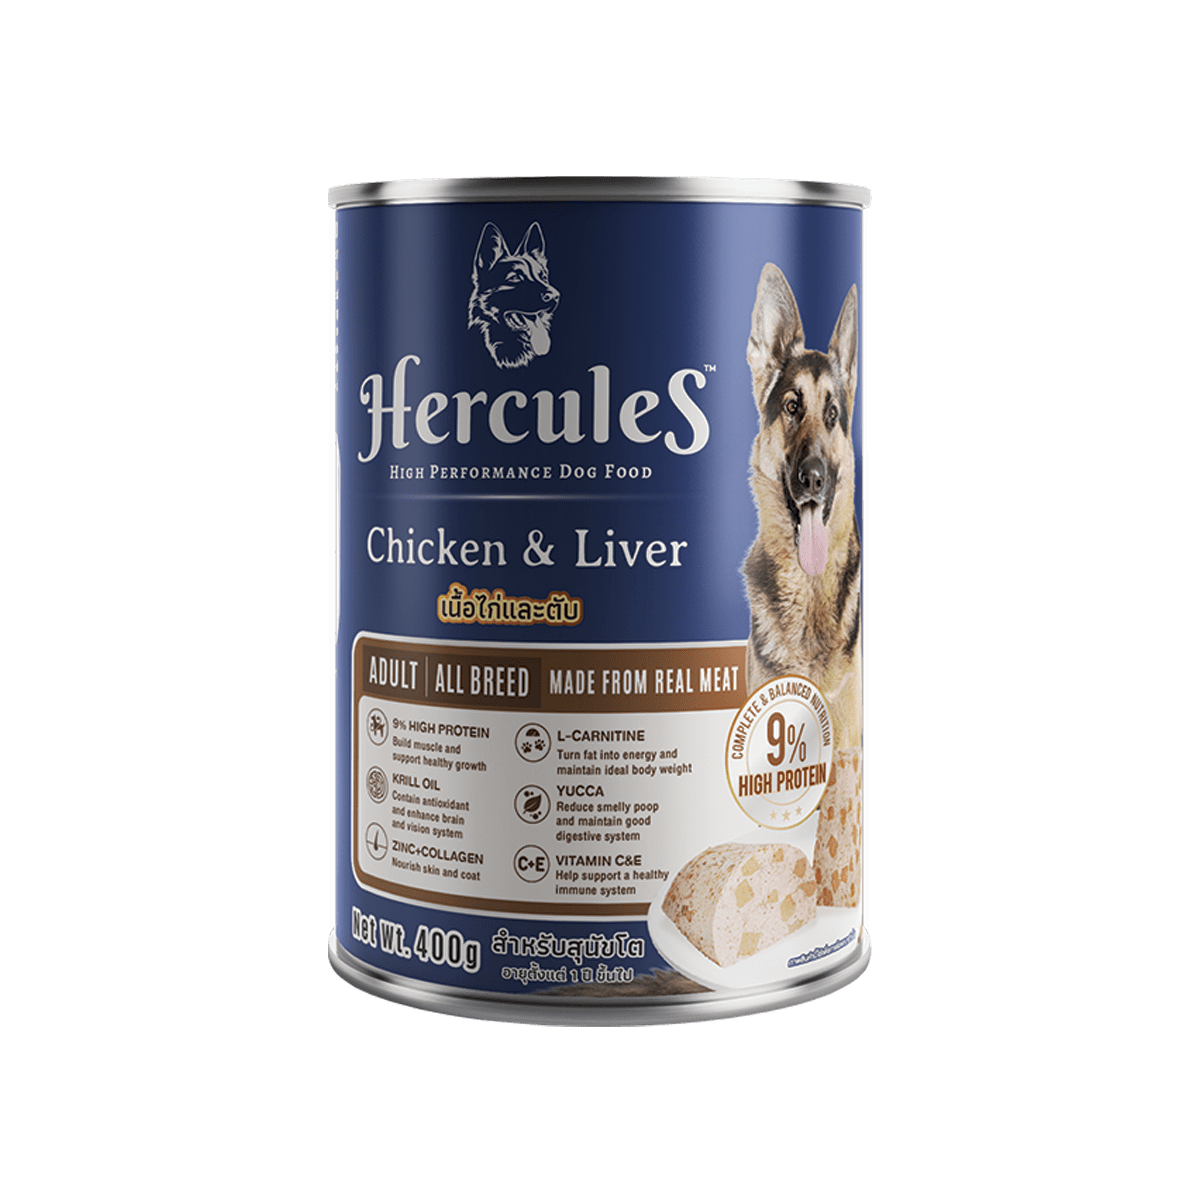 Hercules kyllingerace